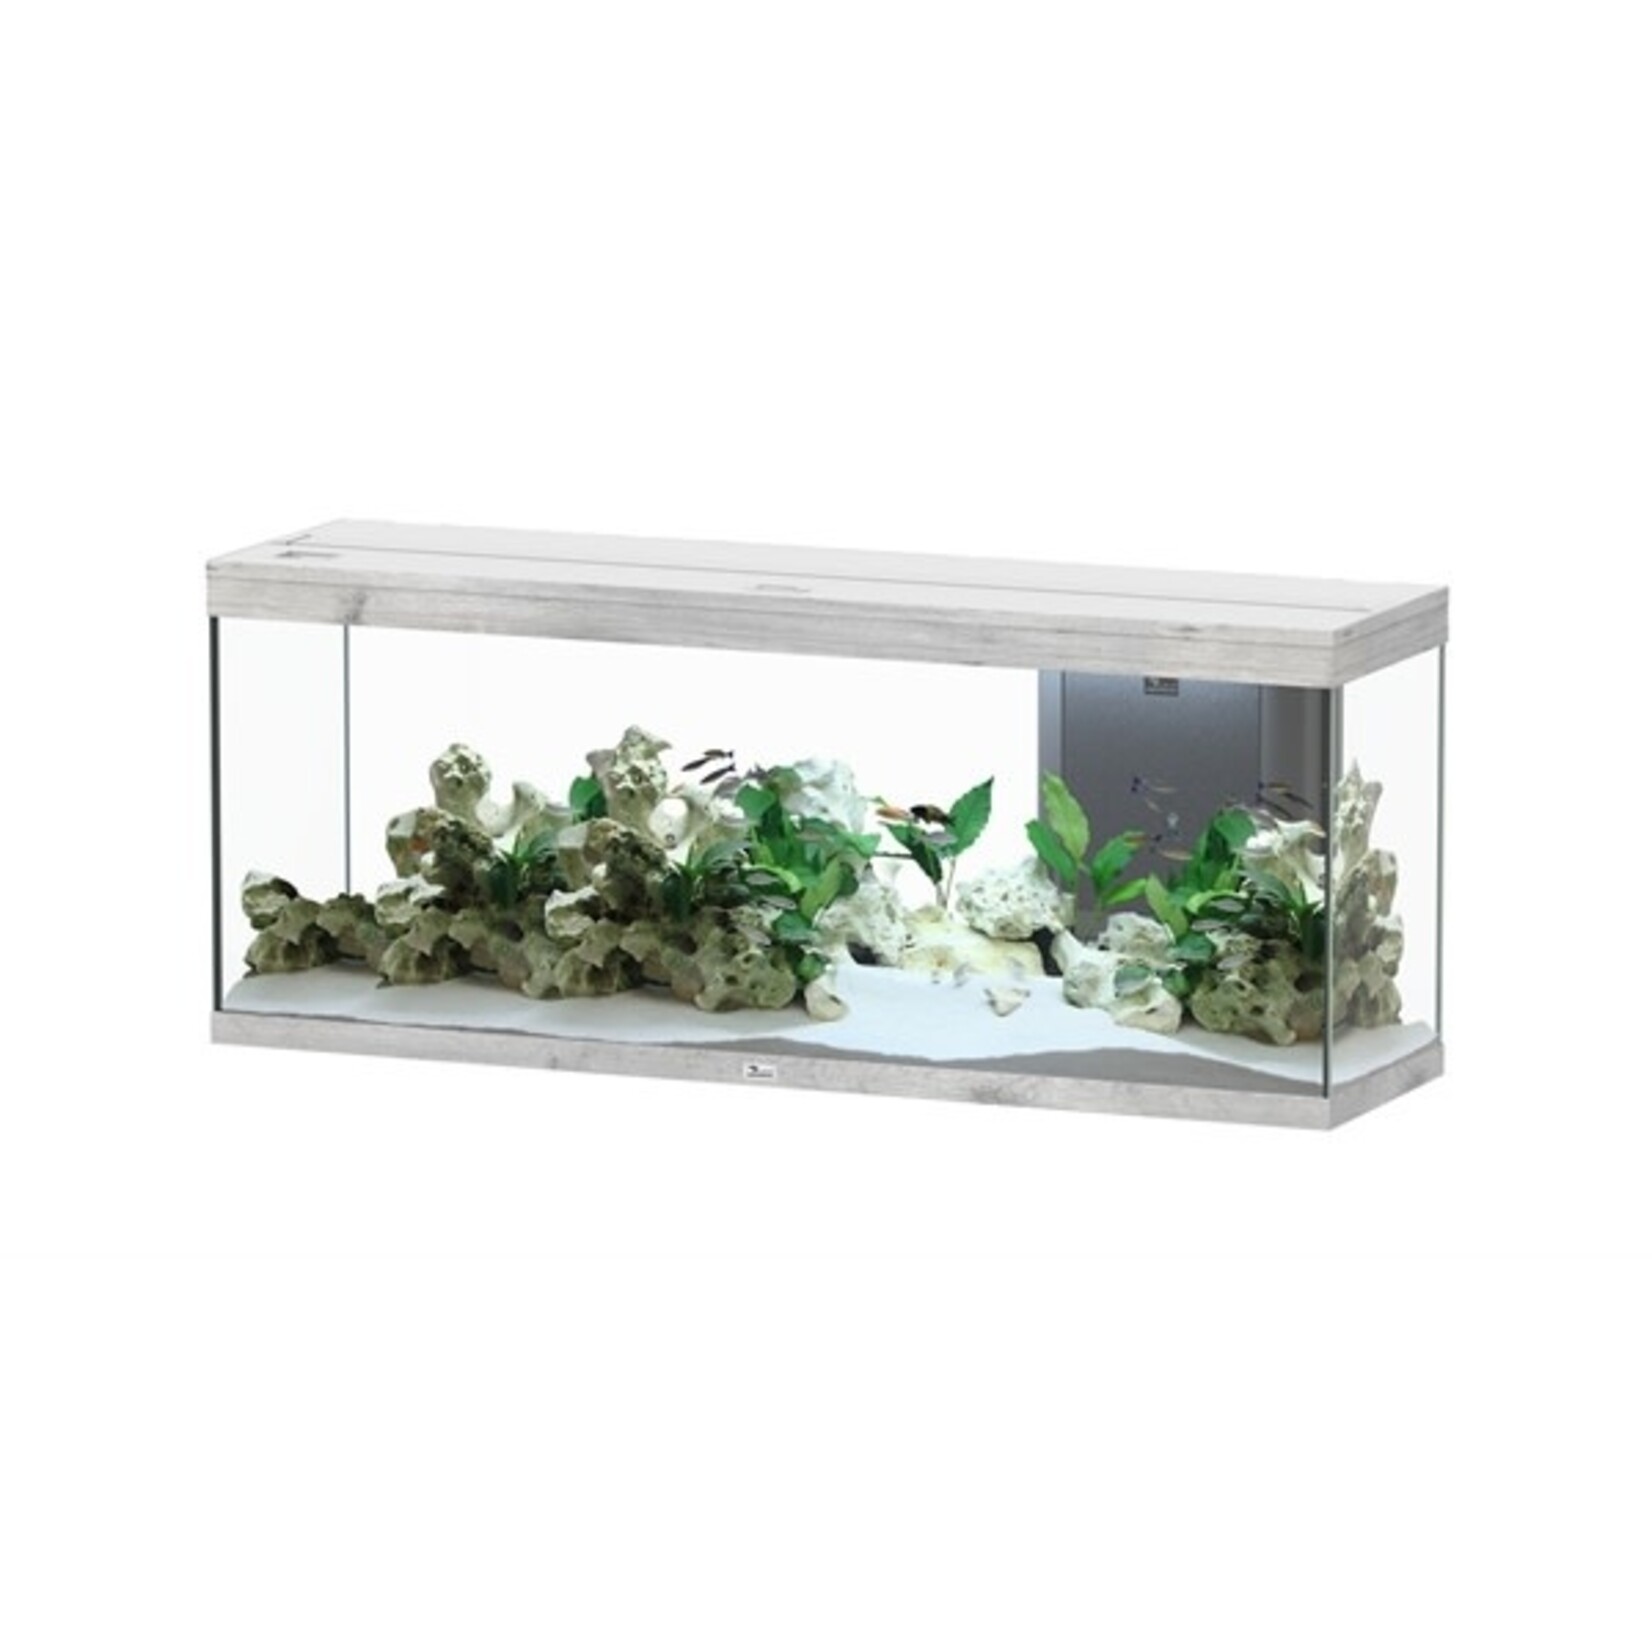 Aquatlantis Aquarium splendid 150 biobox whitewash-088